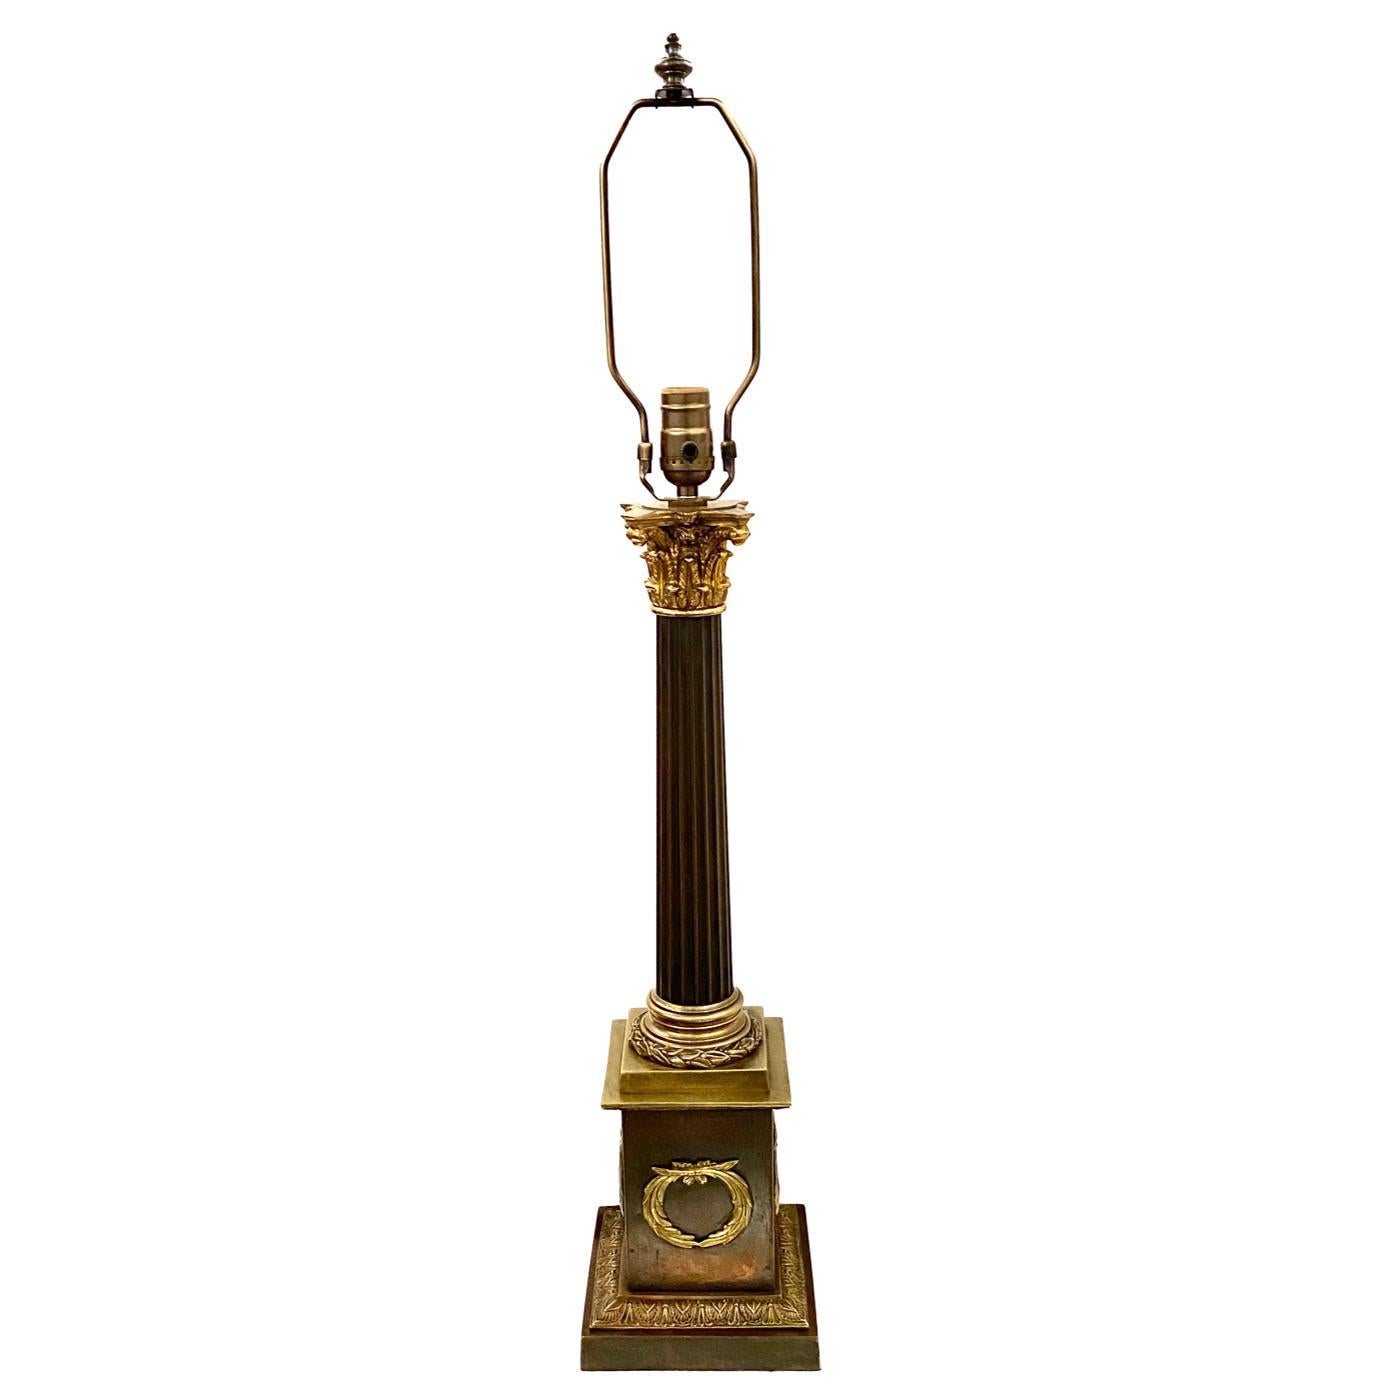 Une lampe de table de style Empire français des années 1920 avec une patine originale.

Mesures :
Hauteur du corps 23,5 pouces
Hauteur jusqu'au support de l'abat-jour 33